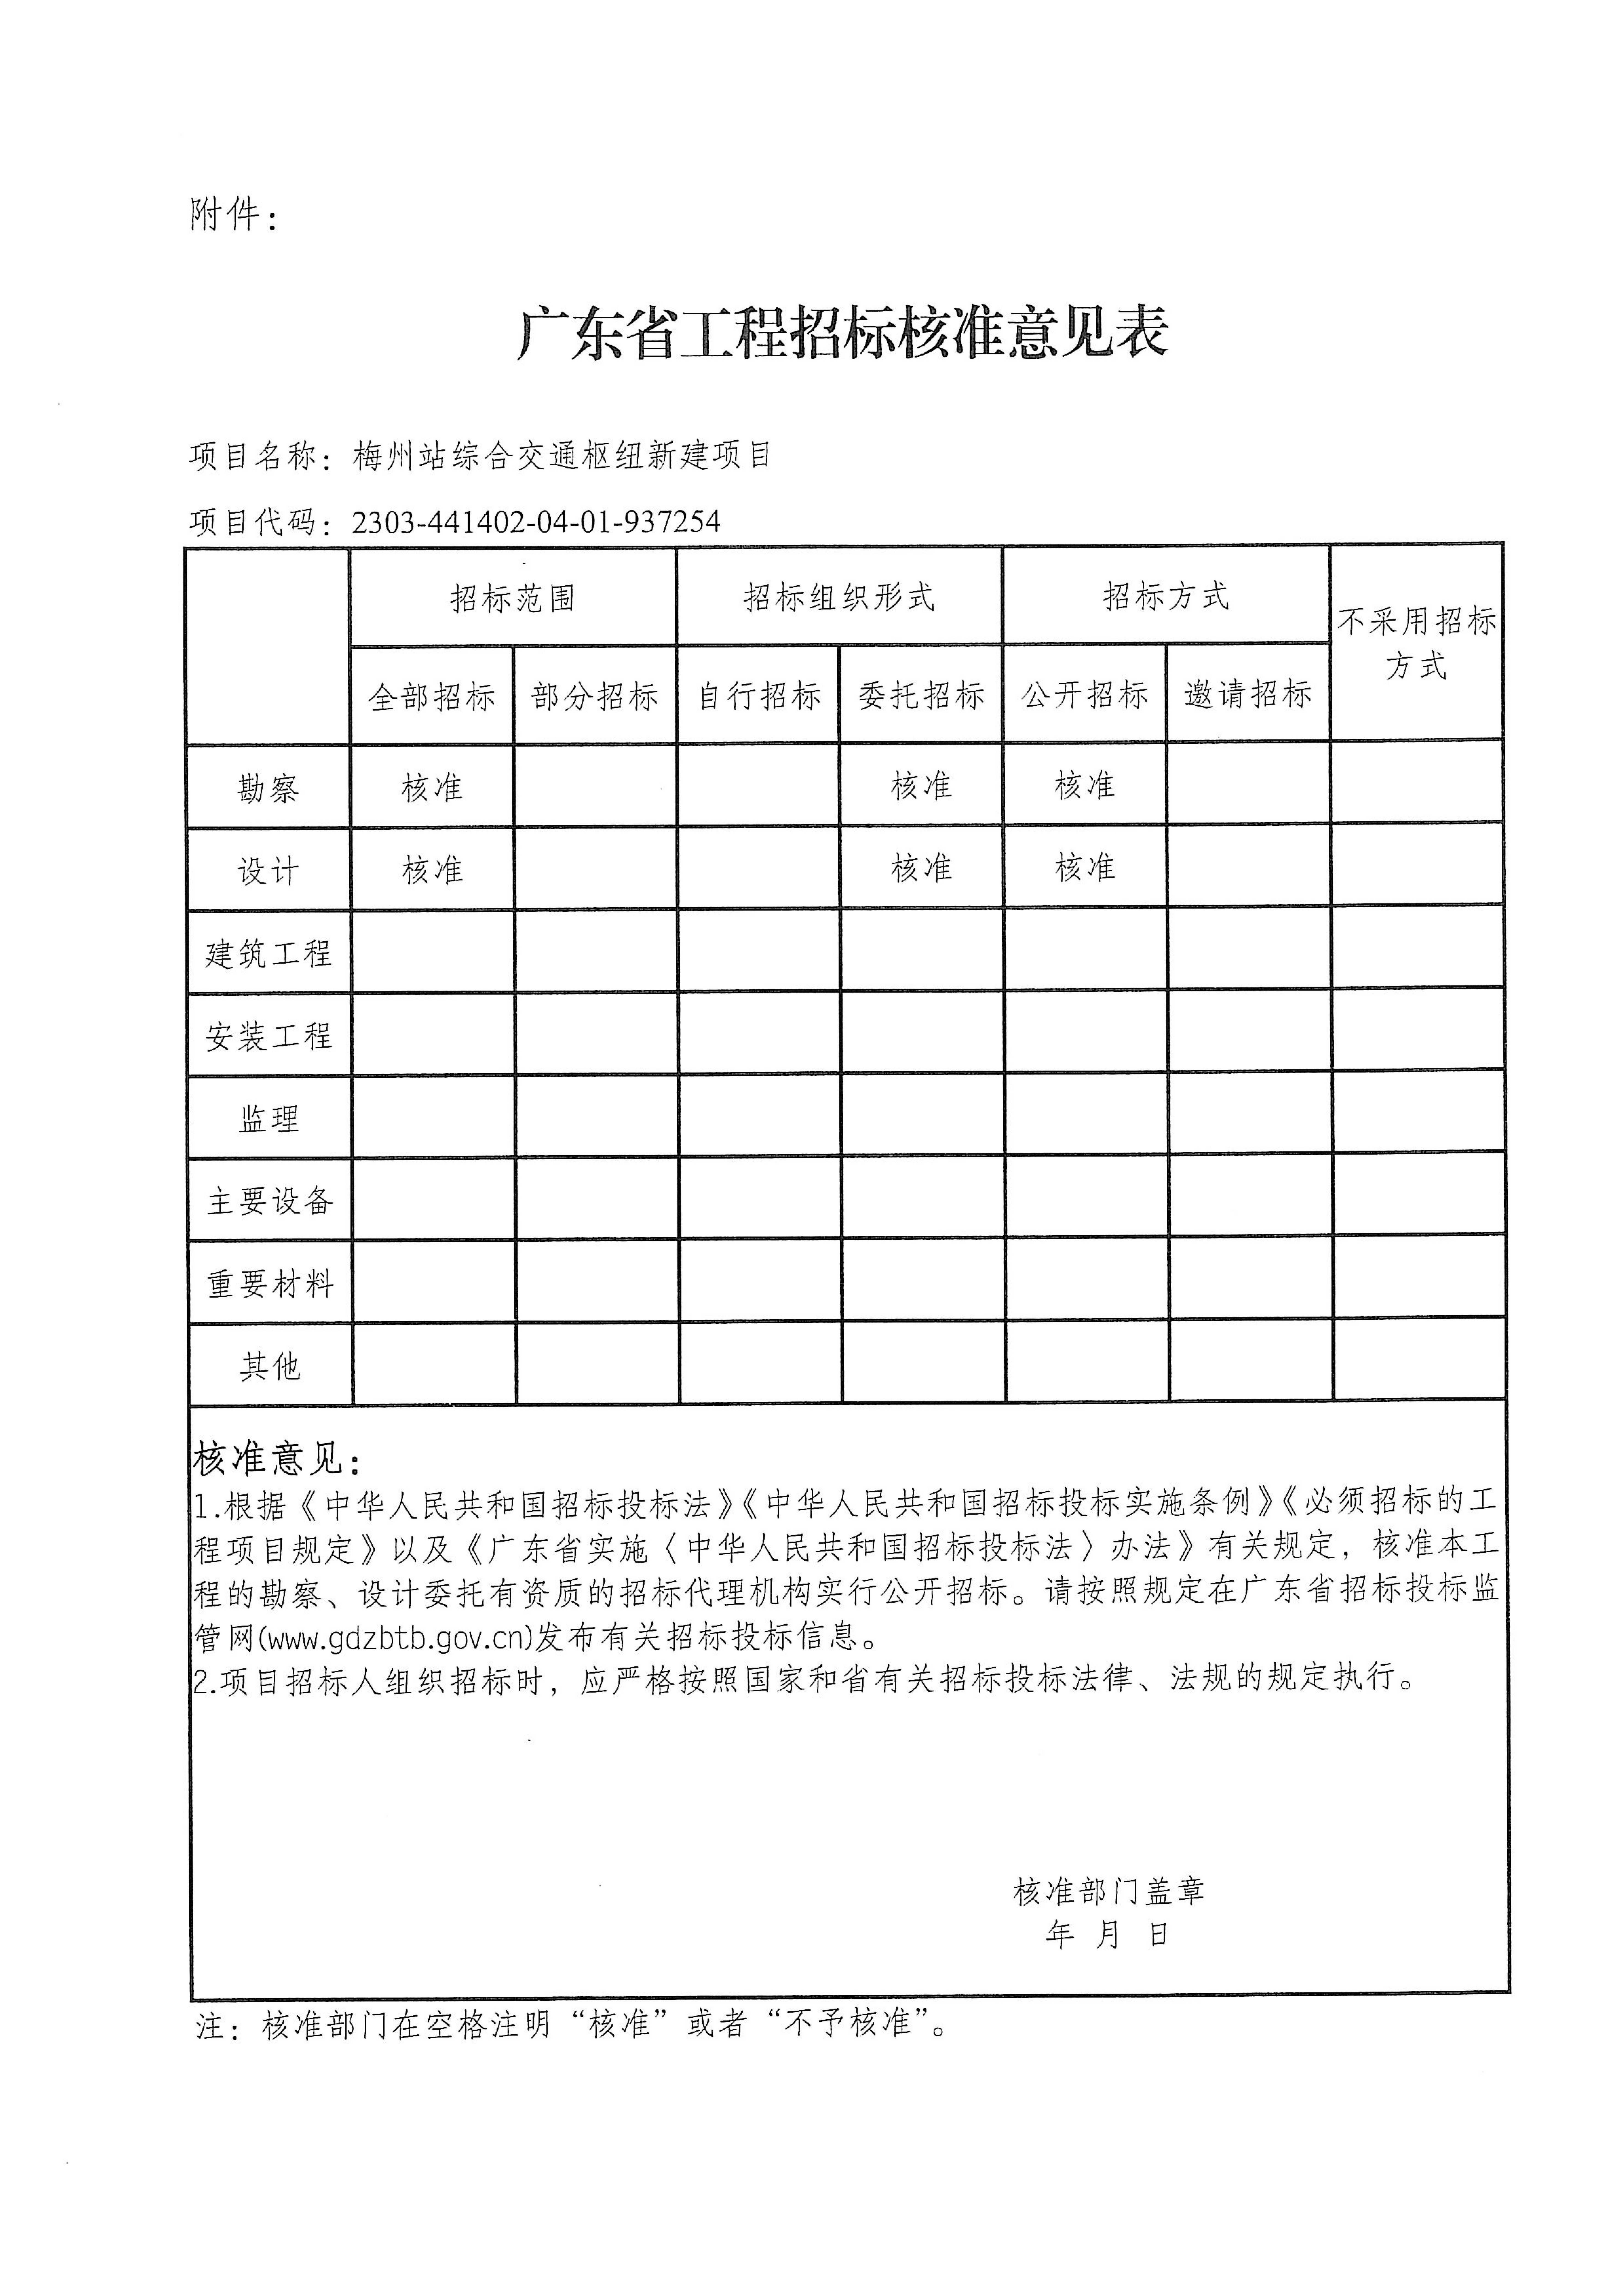 梅州站综合交通枢纽新建项目招标核准意见表.jpg